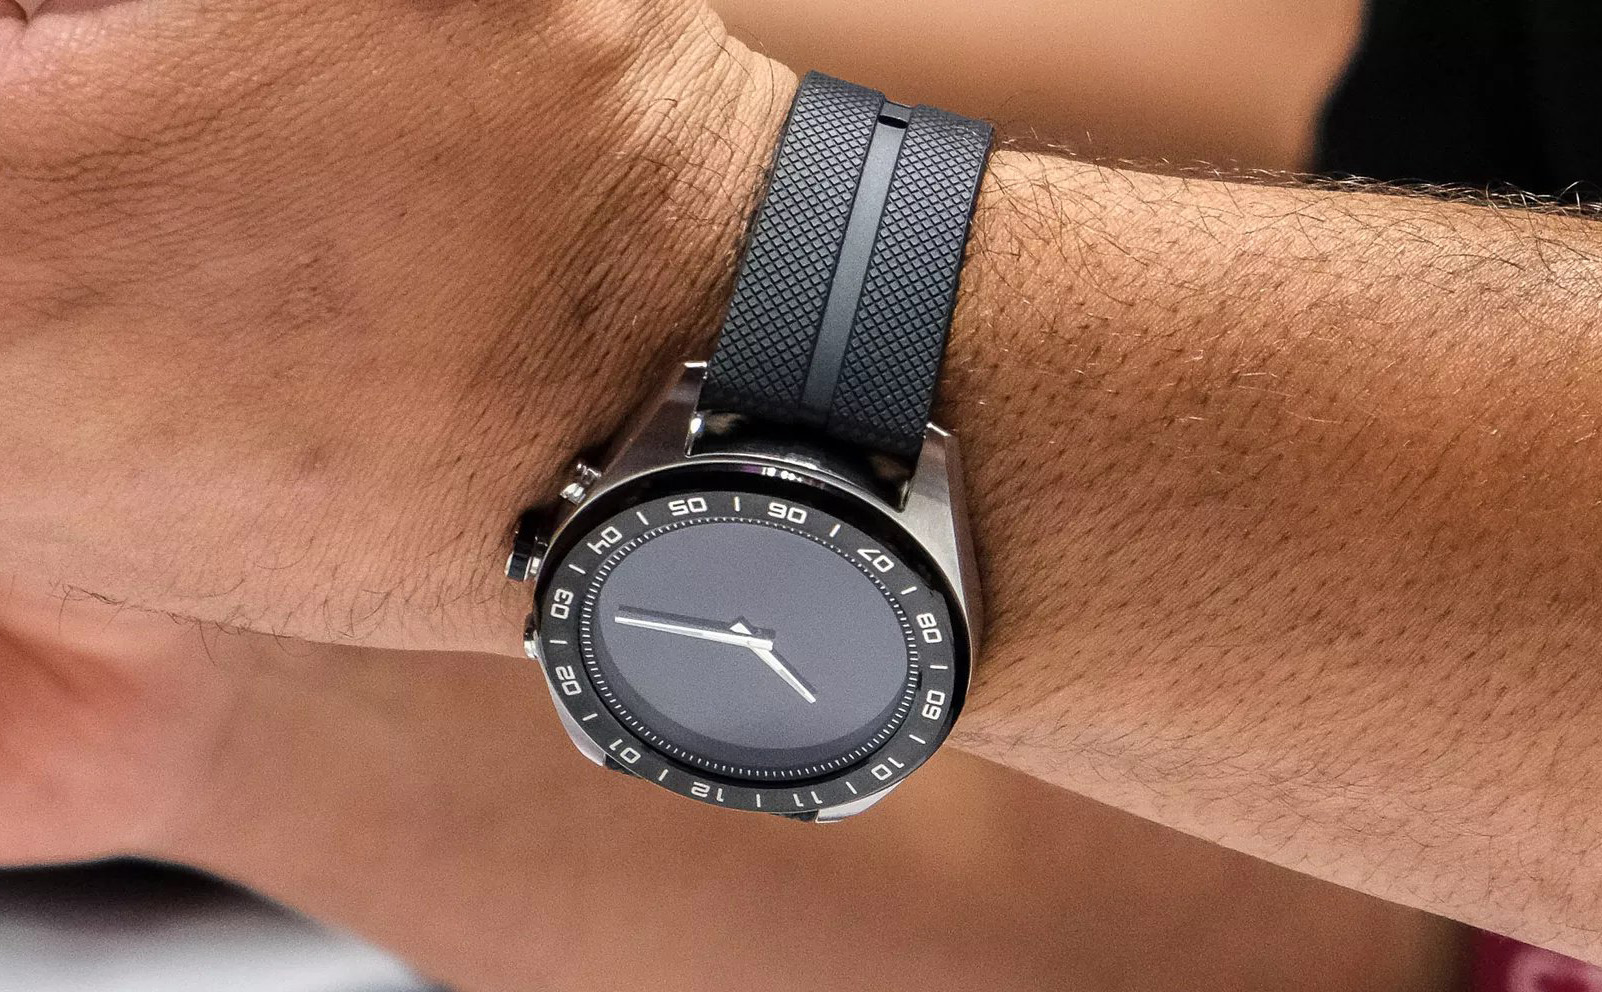 LG W7 - smartwatch hybrid độc đáo của LG, thiếu vắng nhiều tính năng, giá 450$